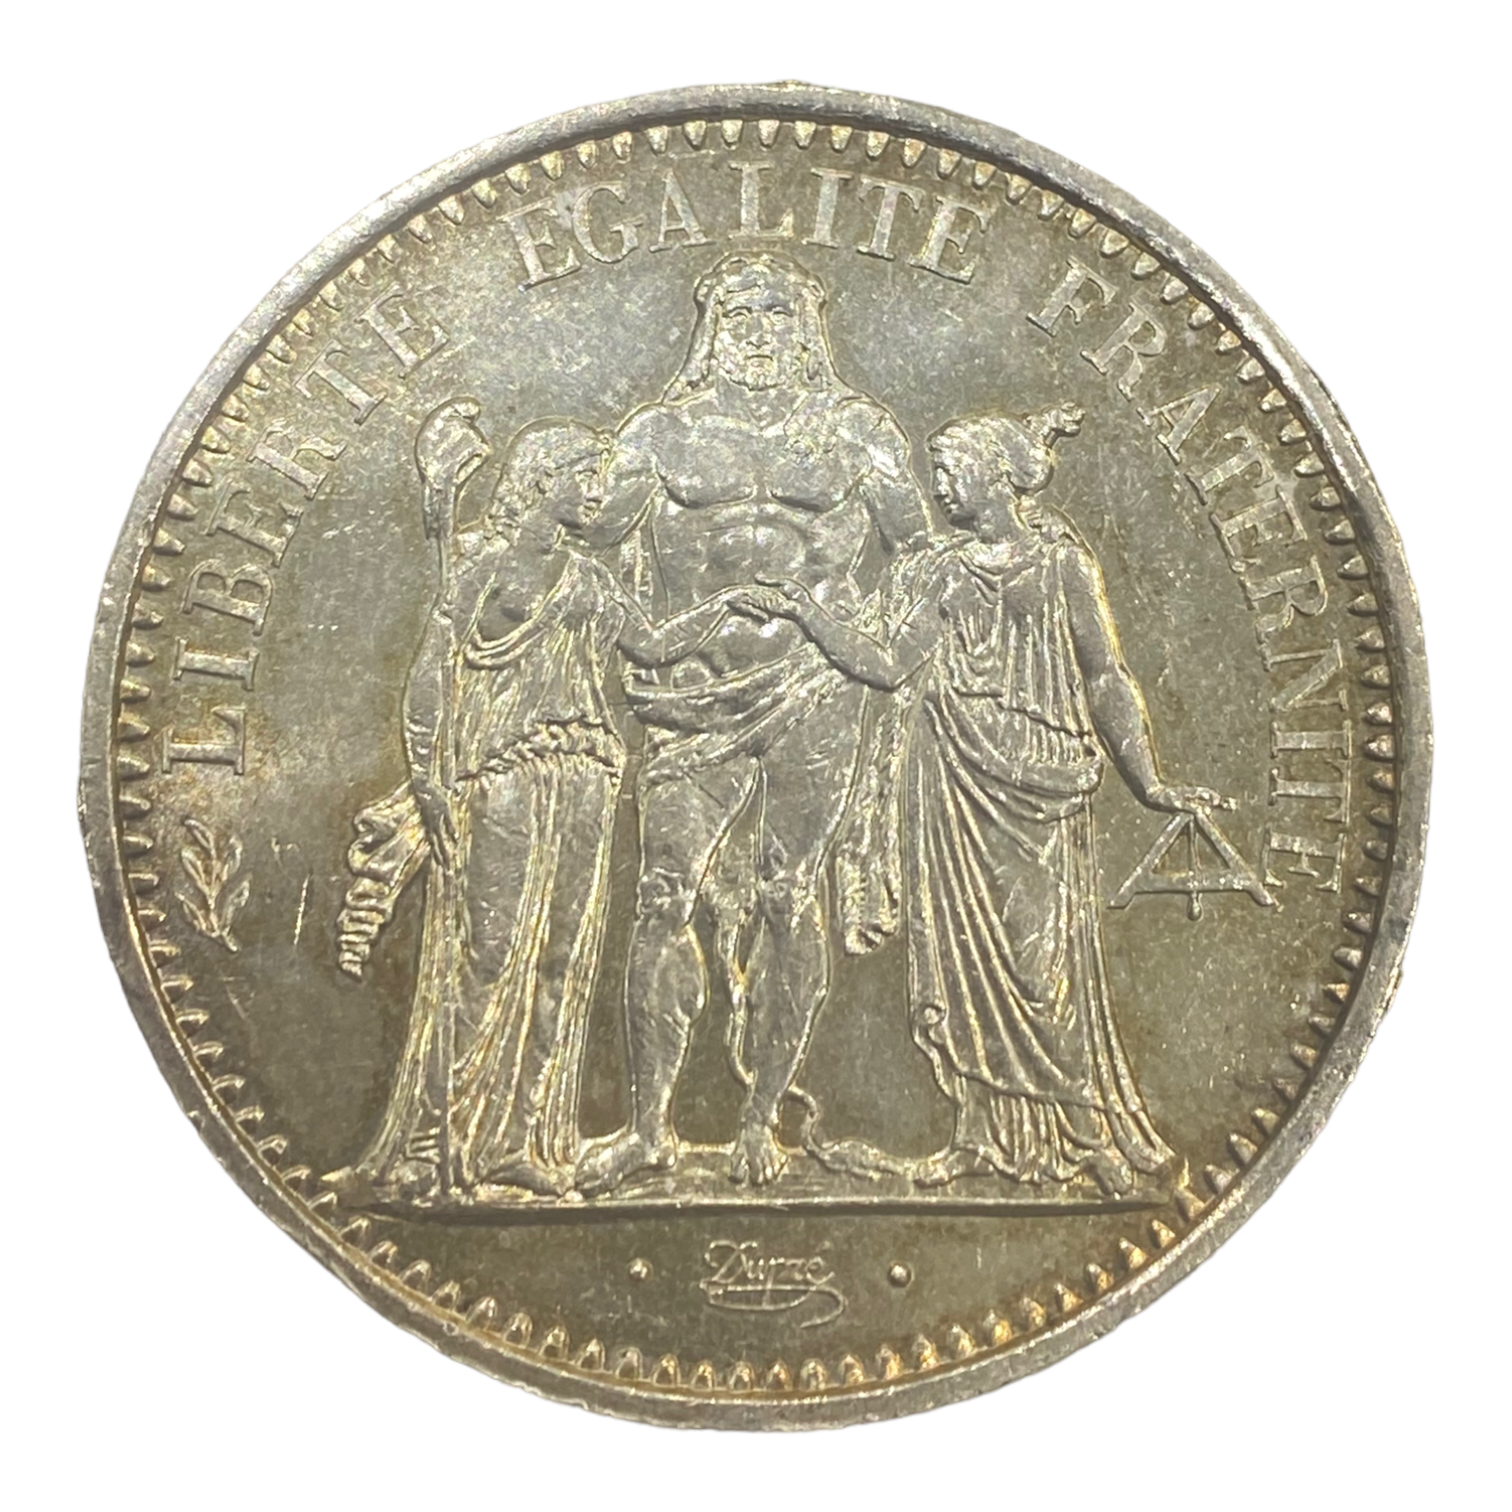 10 francs Hercule 1971